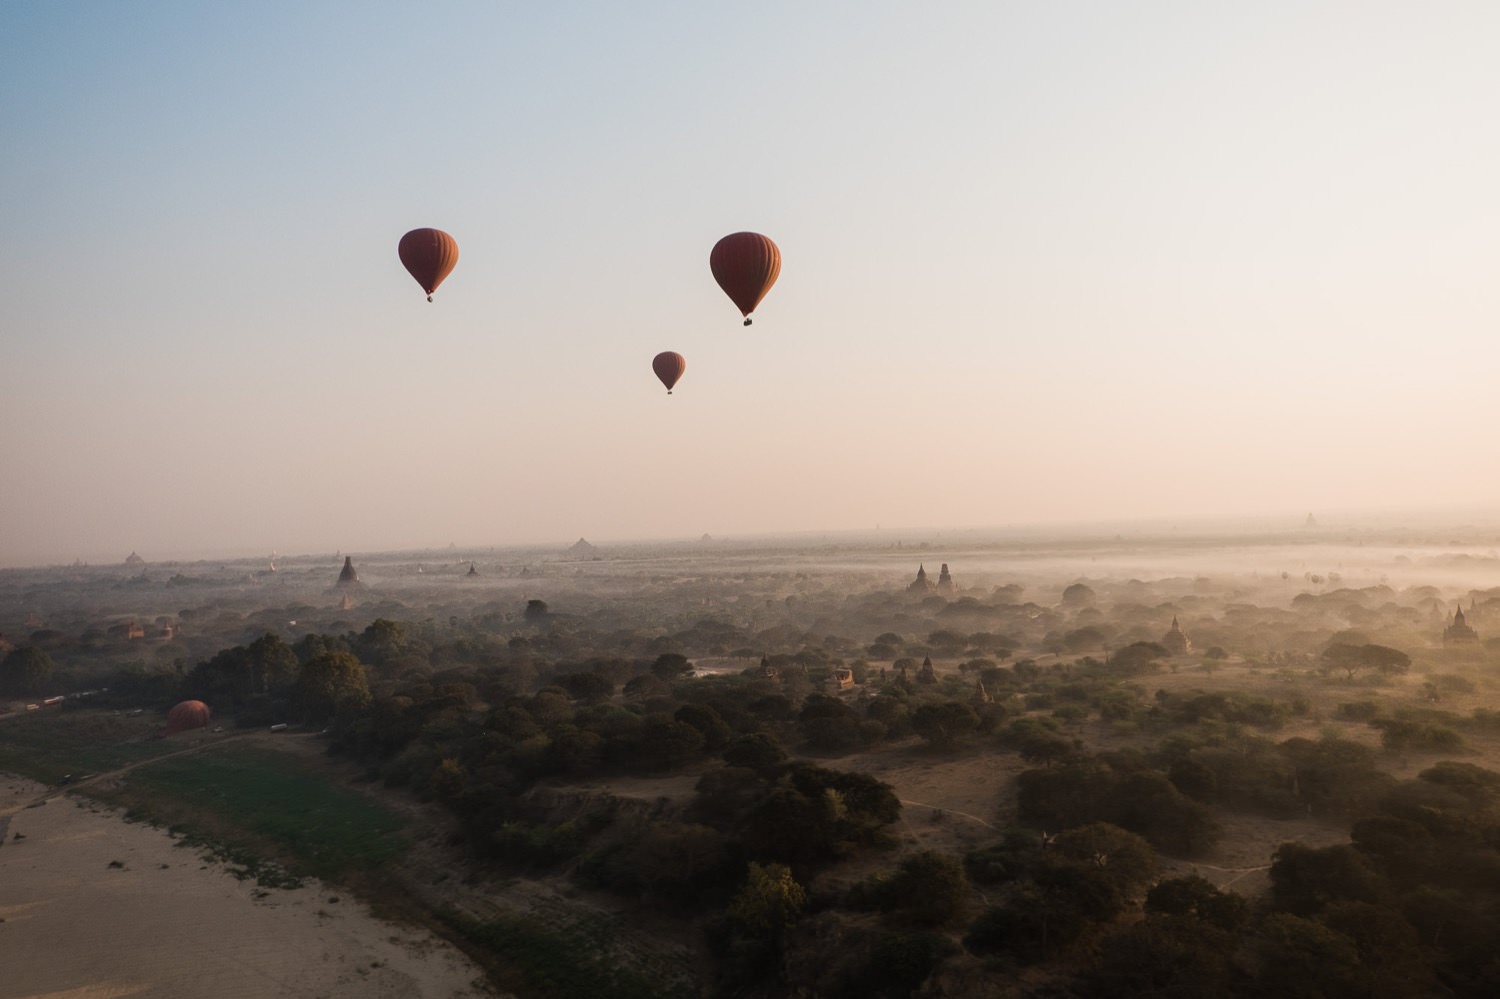 Sonnenaufgang über Bagan vom Ballon aus